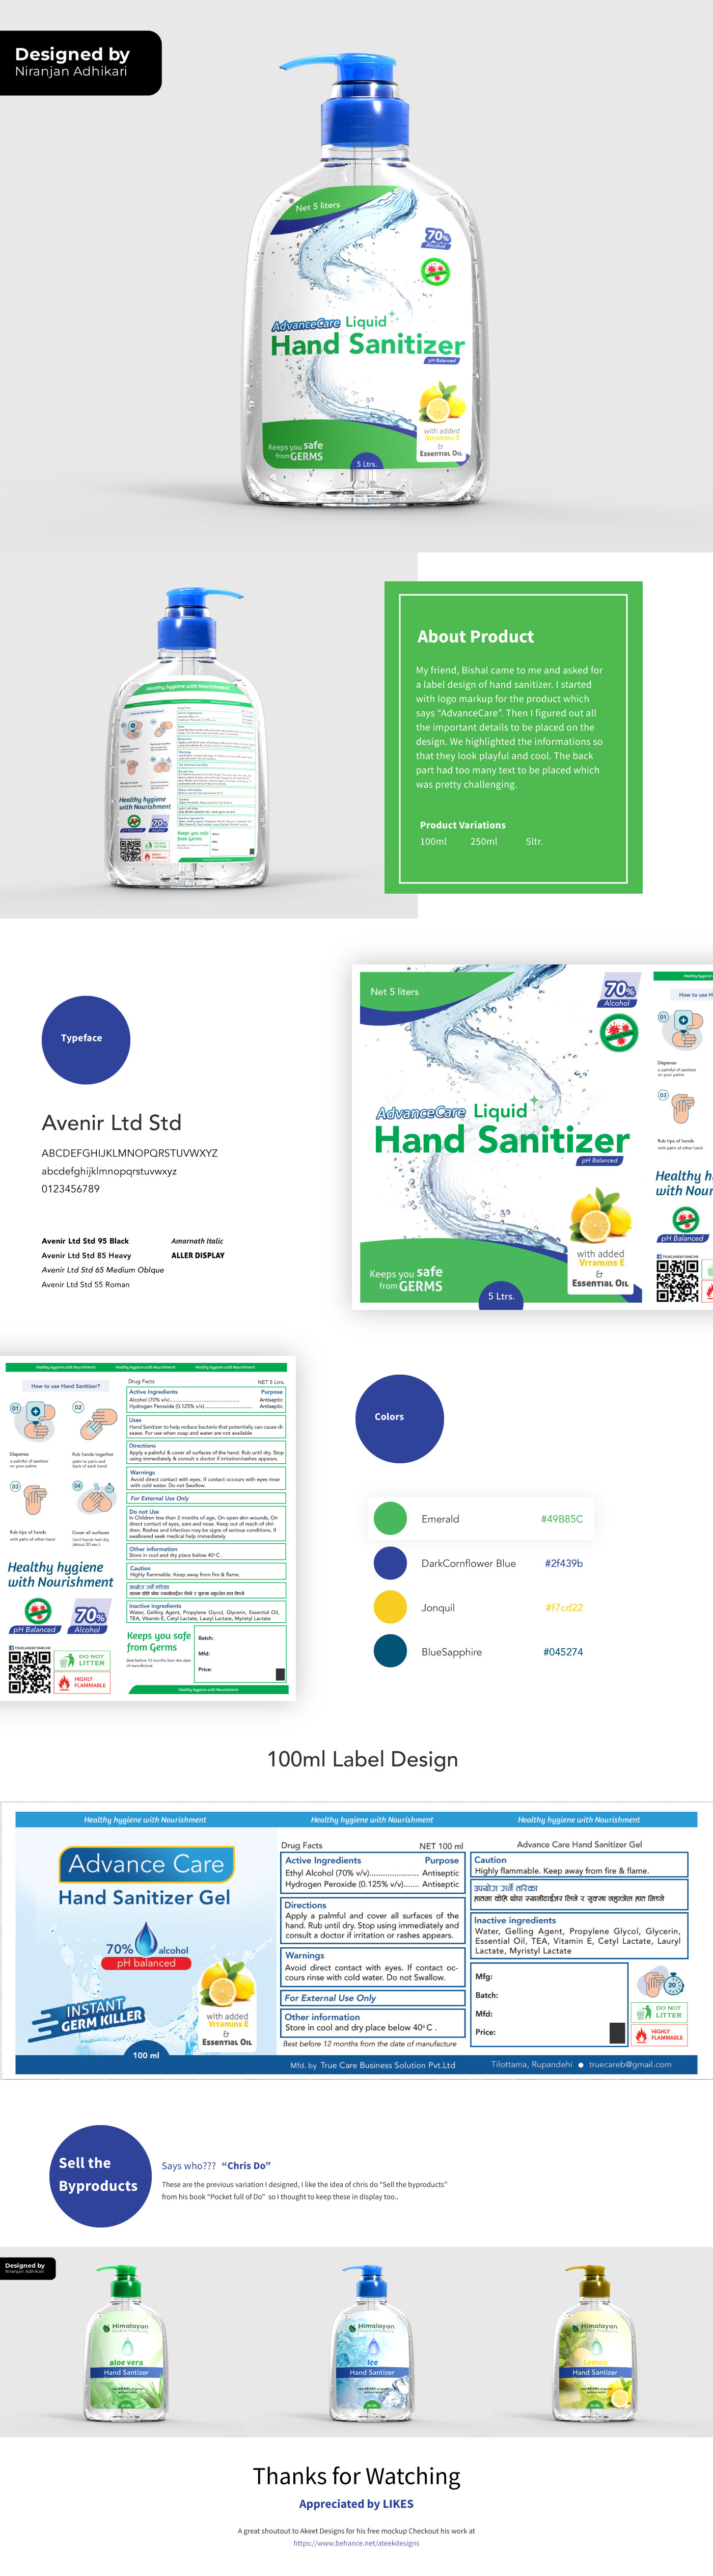 Hand Sanitizer Case study